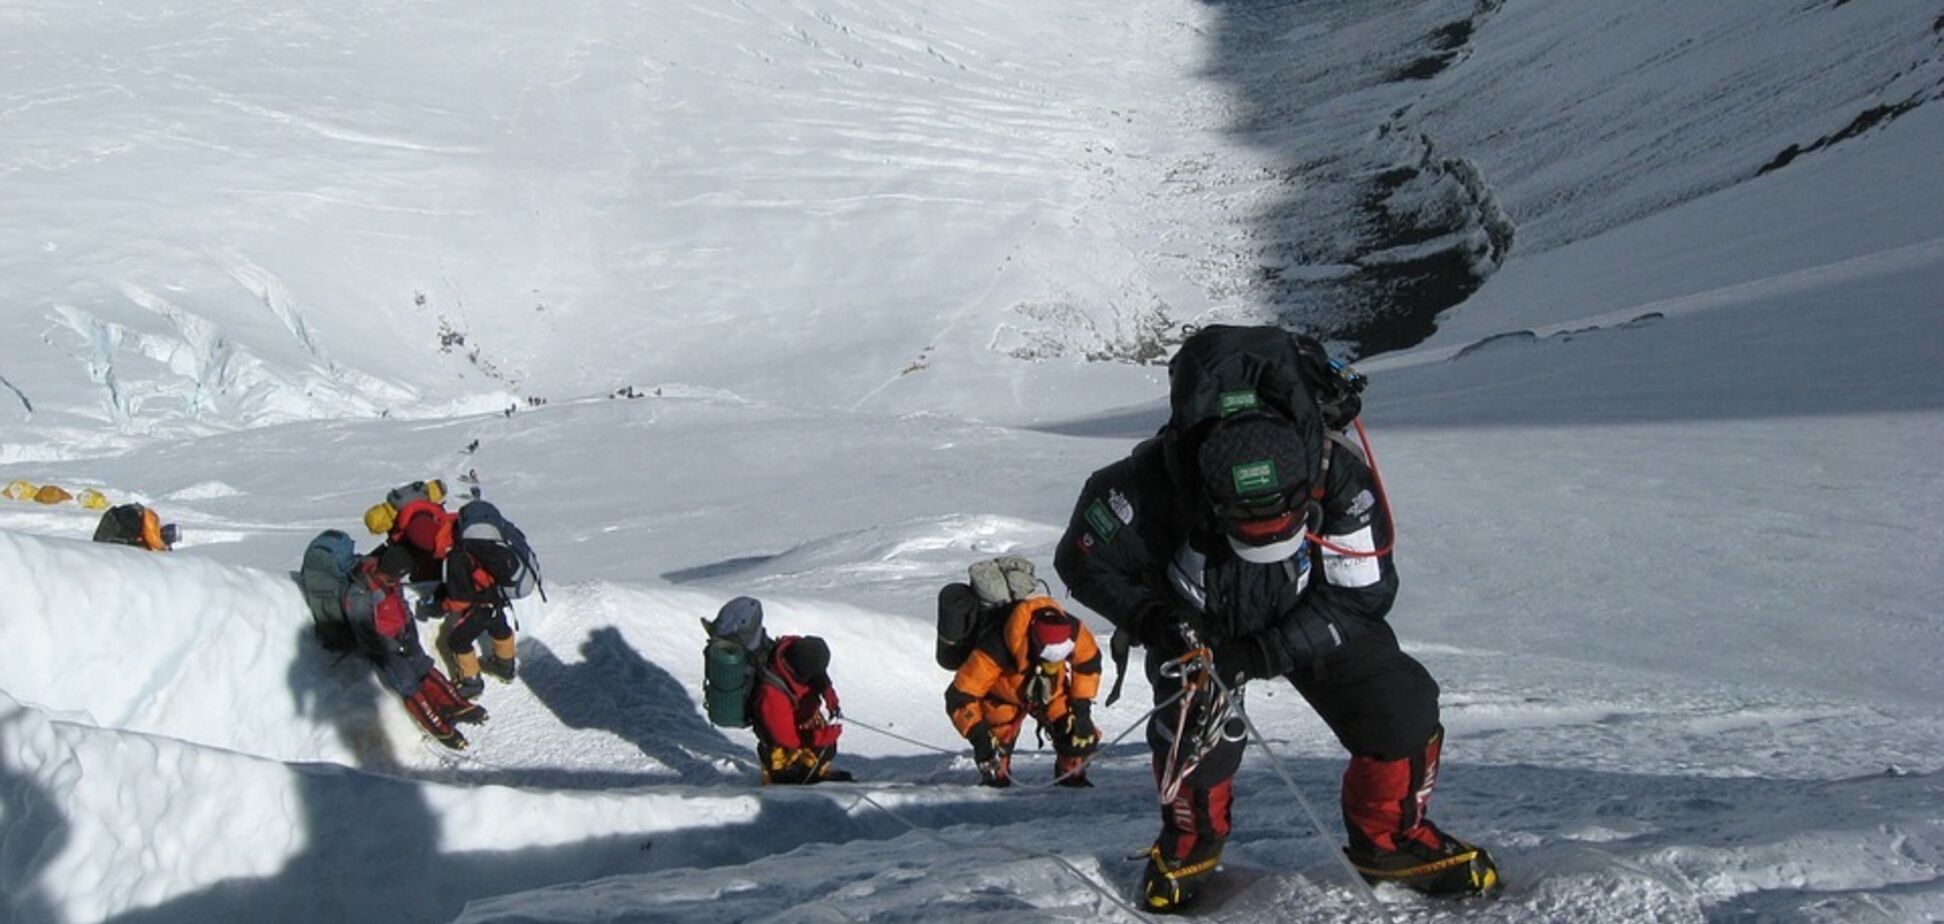 Тонни фекалій: туристи поставили Еверест на грань екологічної катастрофи